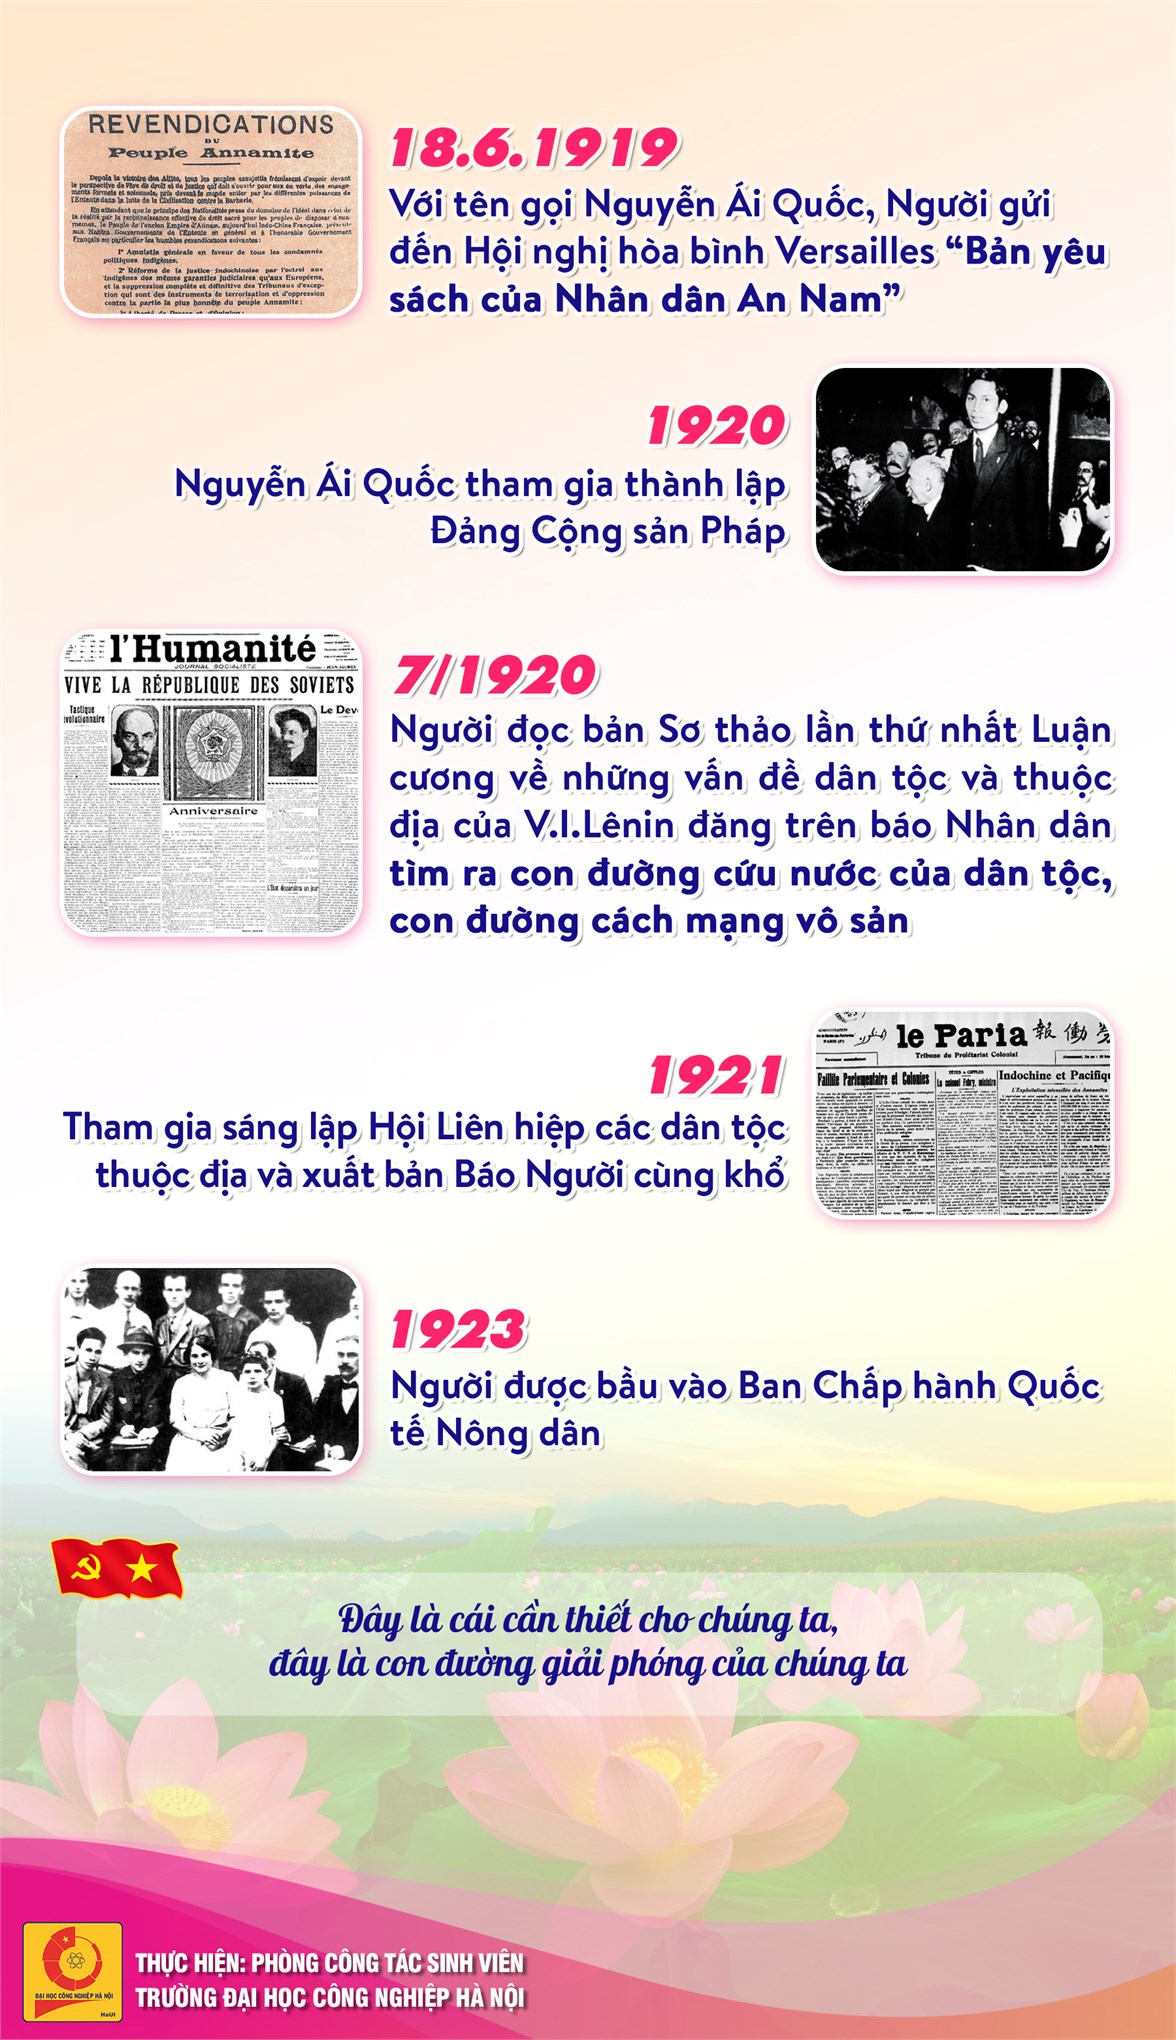 Chủ tịch Hồ Chí Minh - Anh hùng giải phóng dân tộc, Danh nhân văn hóa thế giới